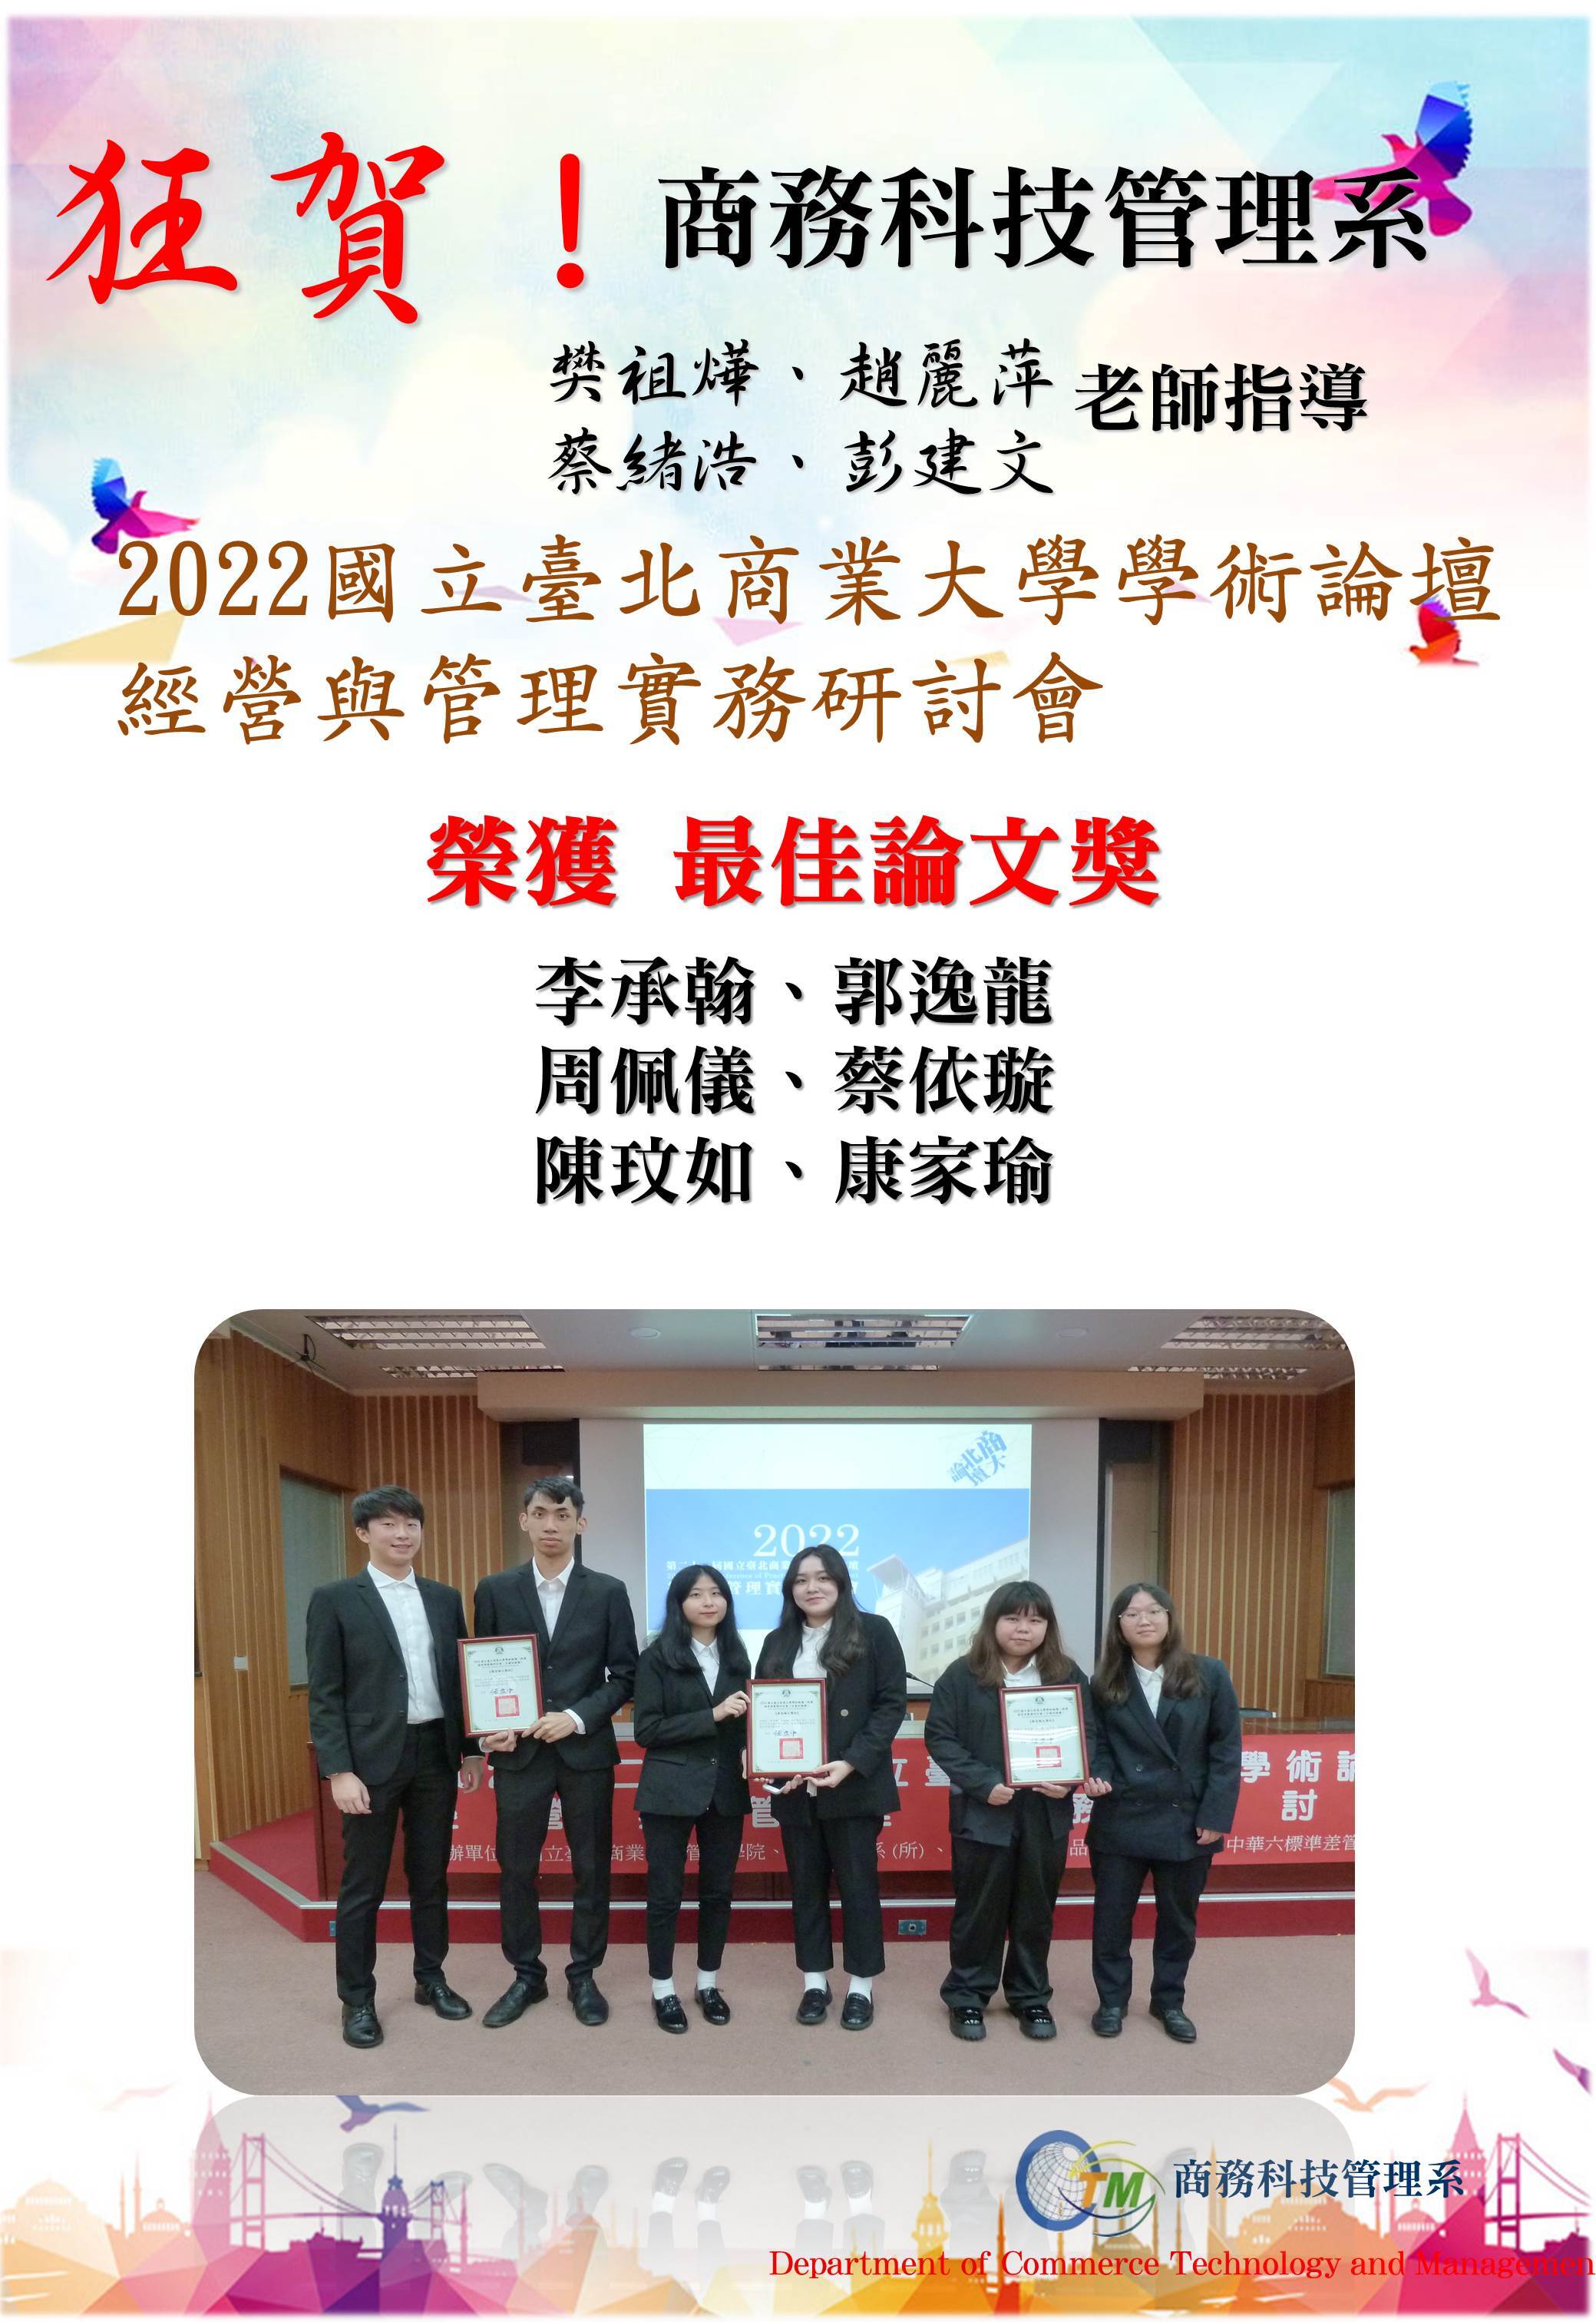 2022國立臺北商業大學學術論壇經營與管理實務研討會-1